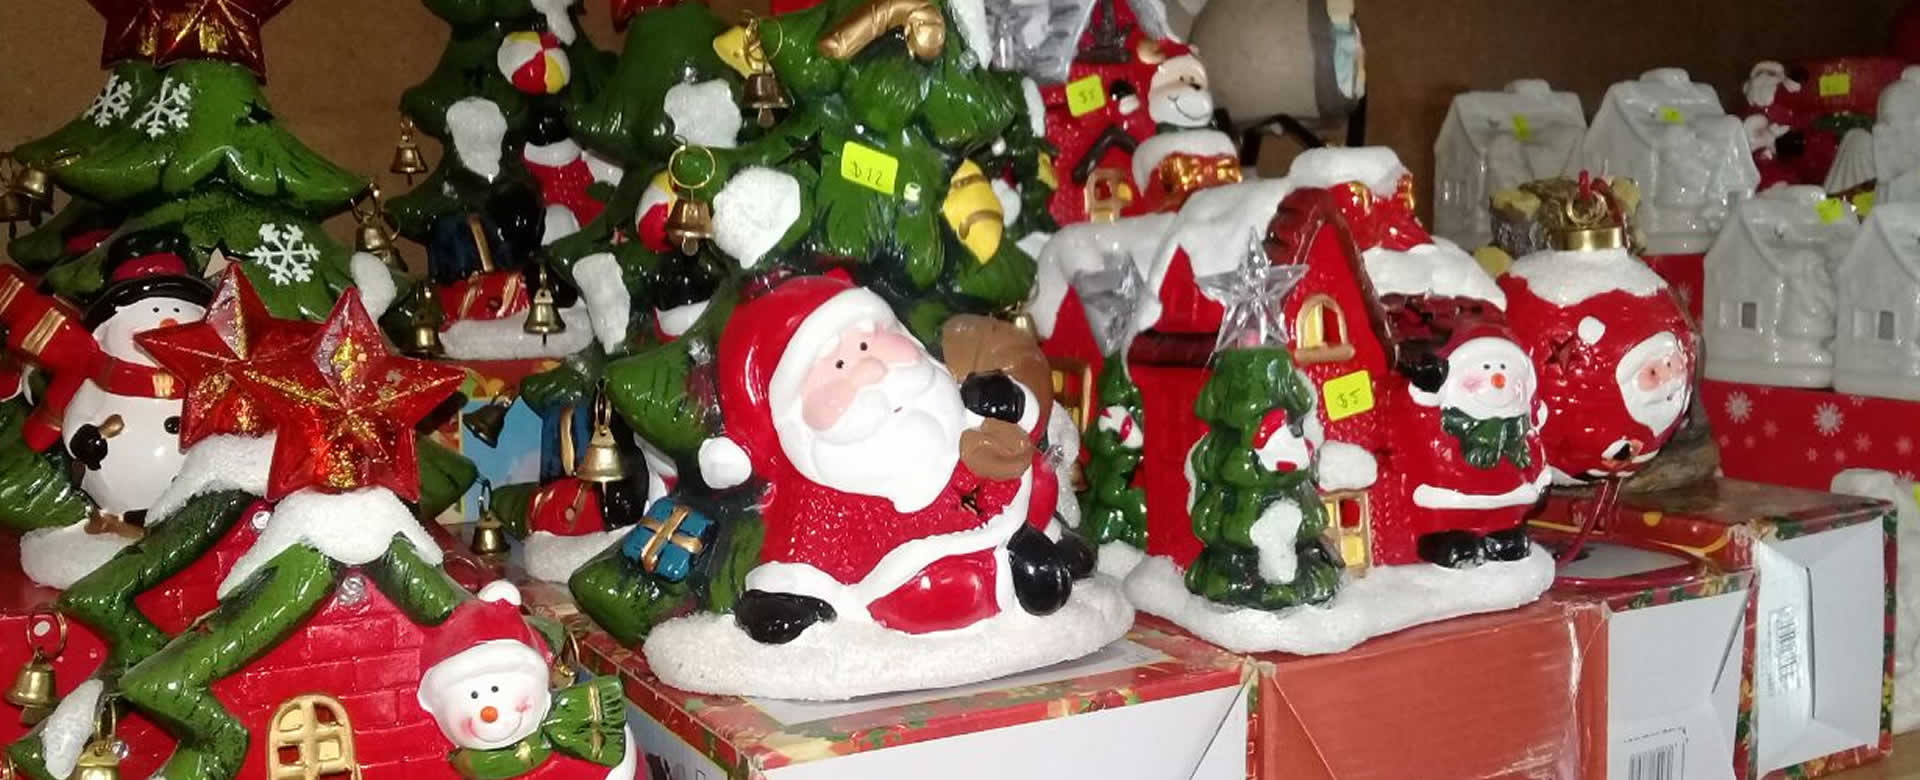 Comerciantes de Jinotega surtidos con productos navideños